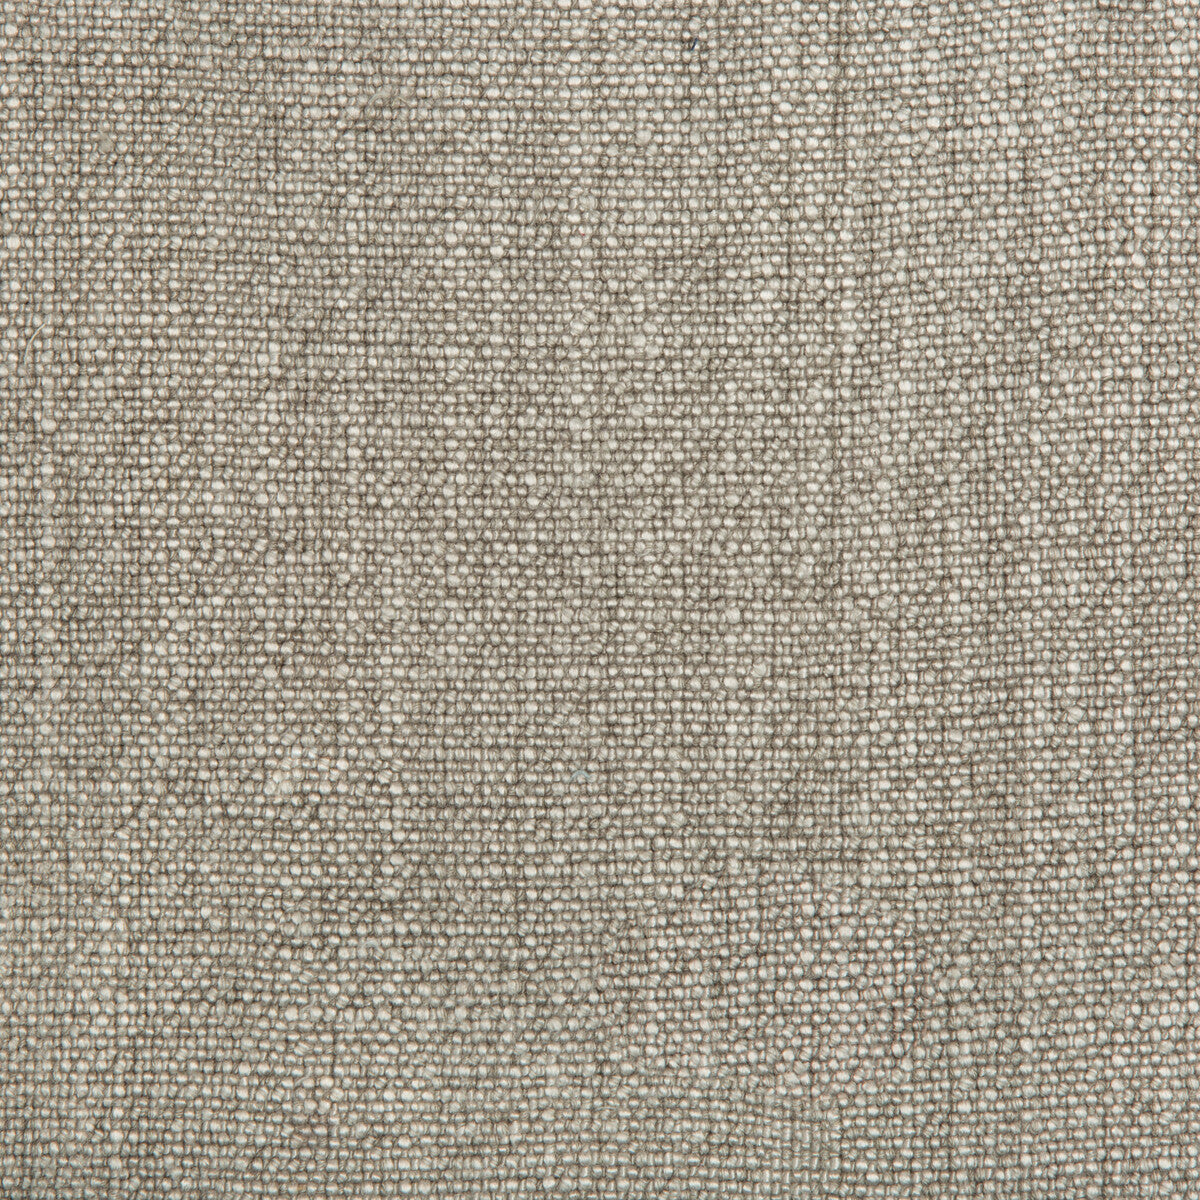 Kravet Basics fabric in 35189-1611 color - pattern 35189.1611.0 - by Kravet Basics